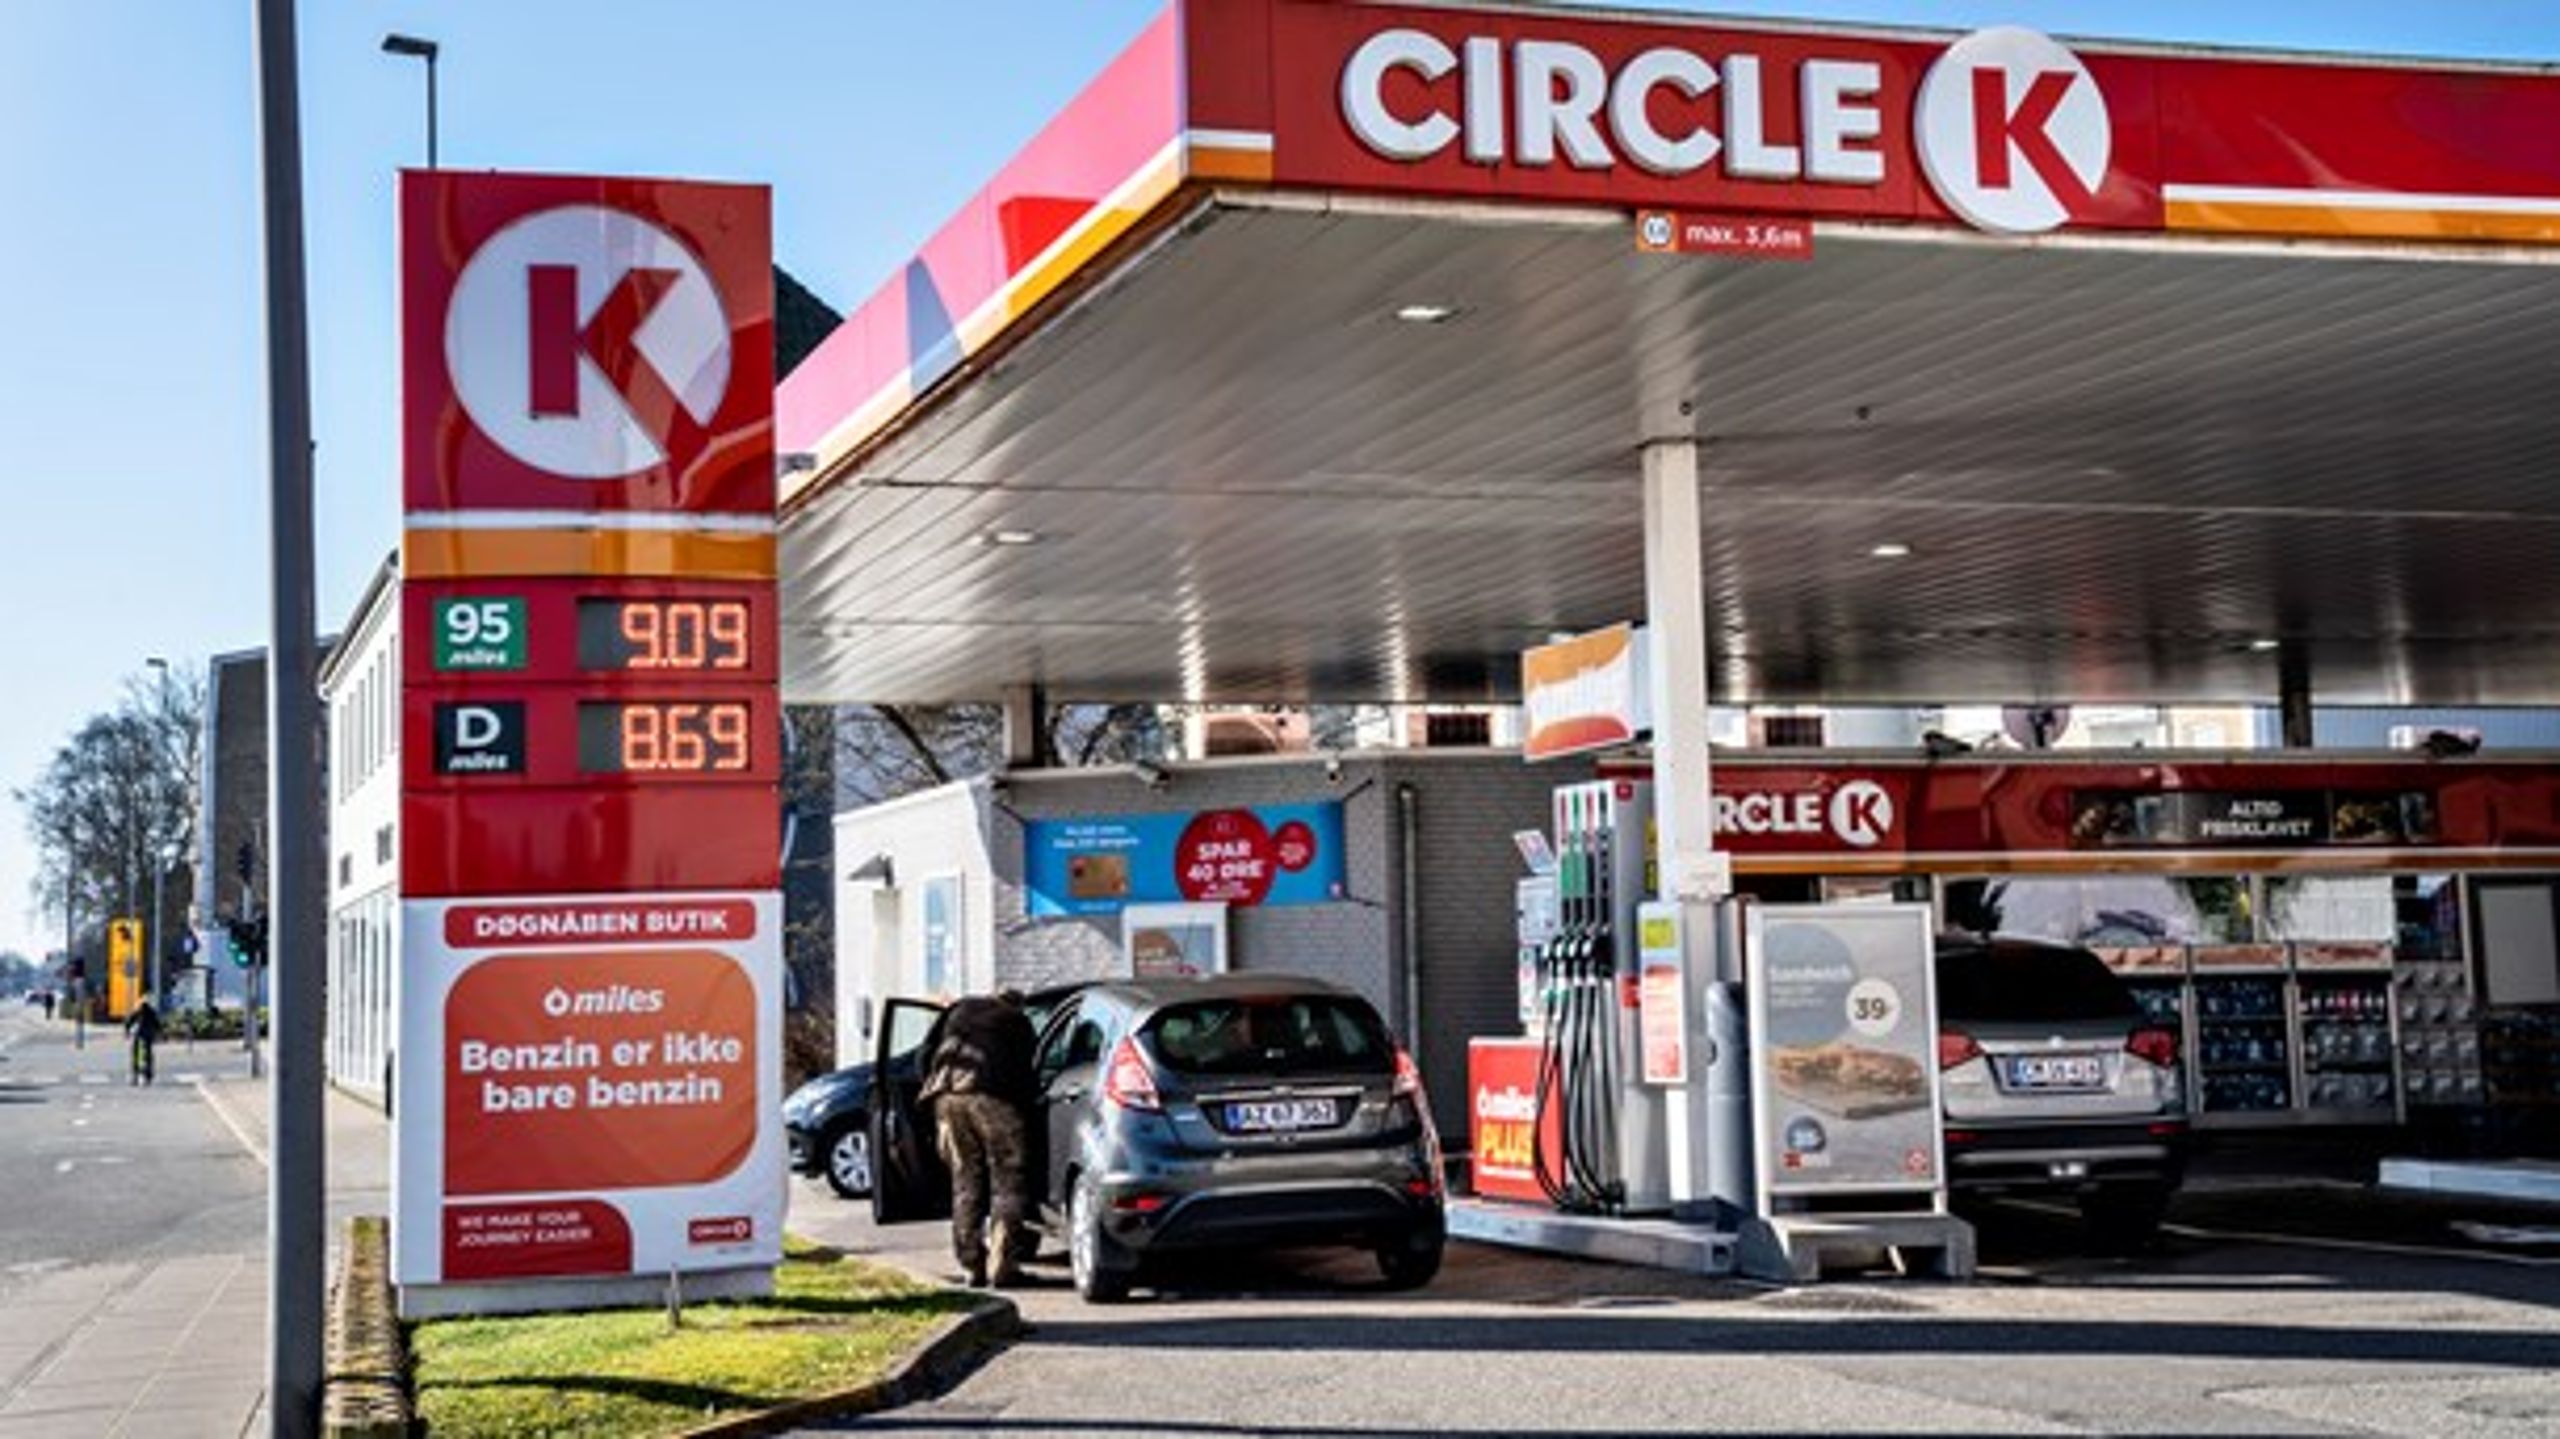 Circle K bidrager til den grønne omstilling ved at opstille hurtigladestandere til elbiler, skriver Peter Rasmussen, direktør for brændstof og energi.&nbsp;